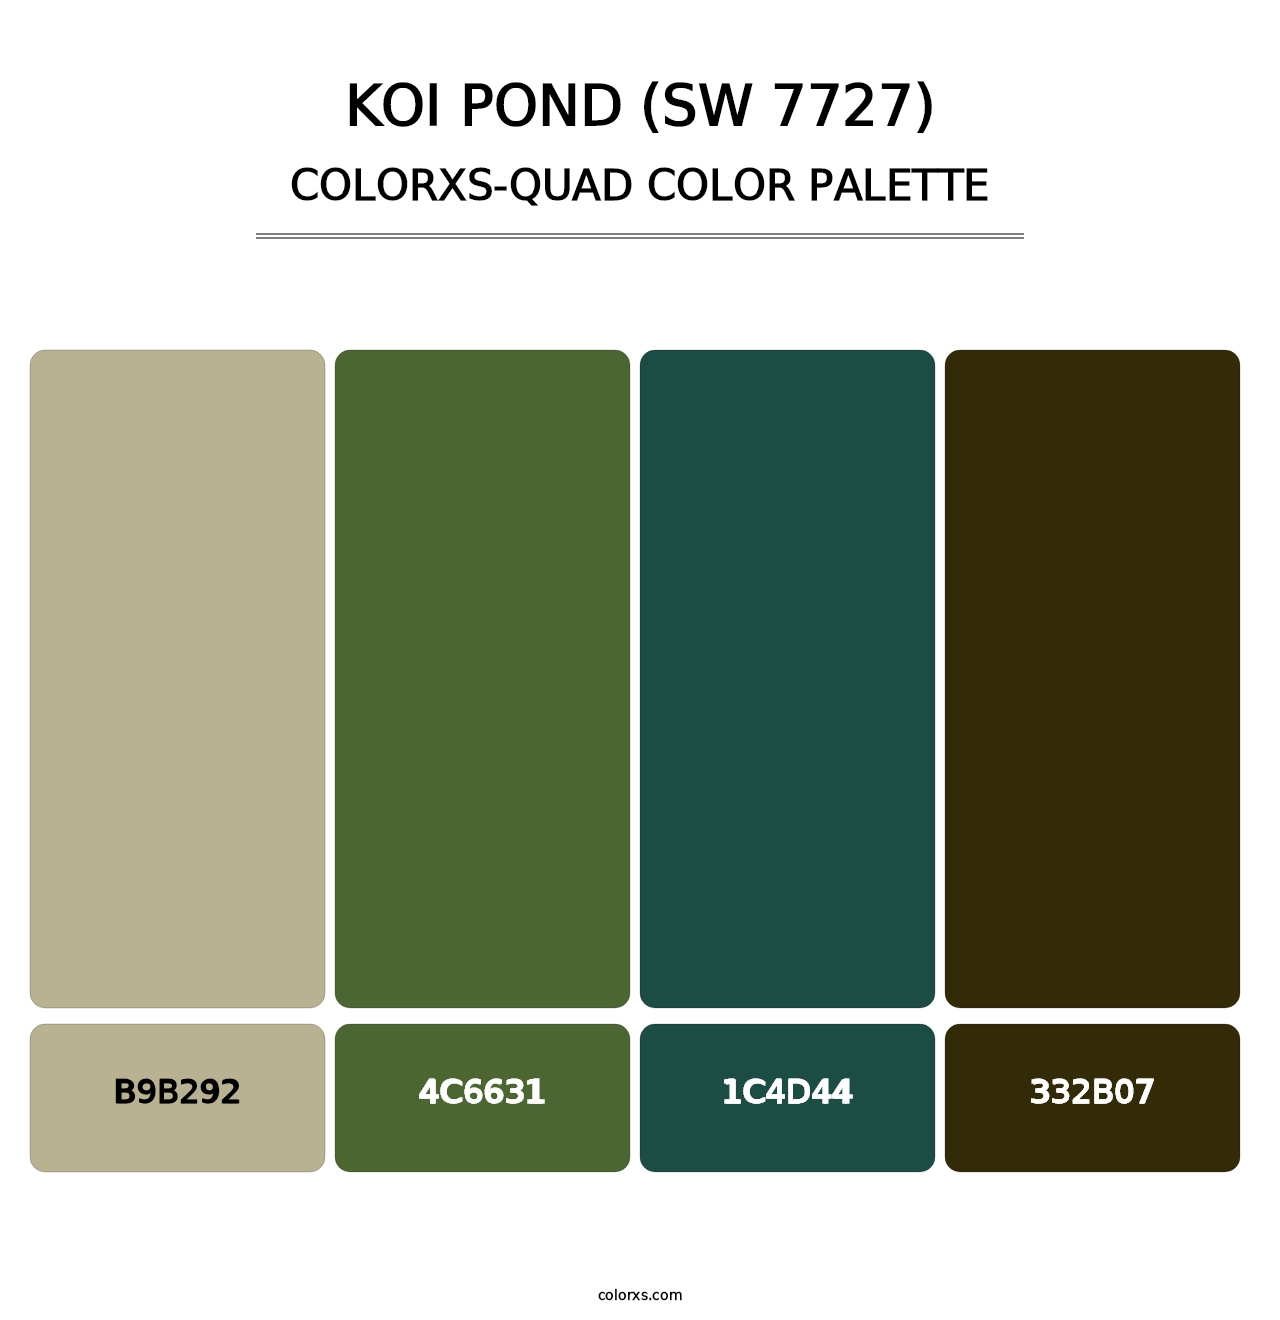 Koi Pond (SW 7727) - Colorxs Quad Palette